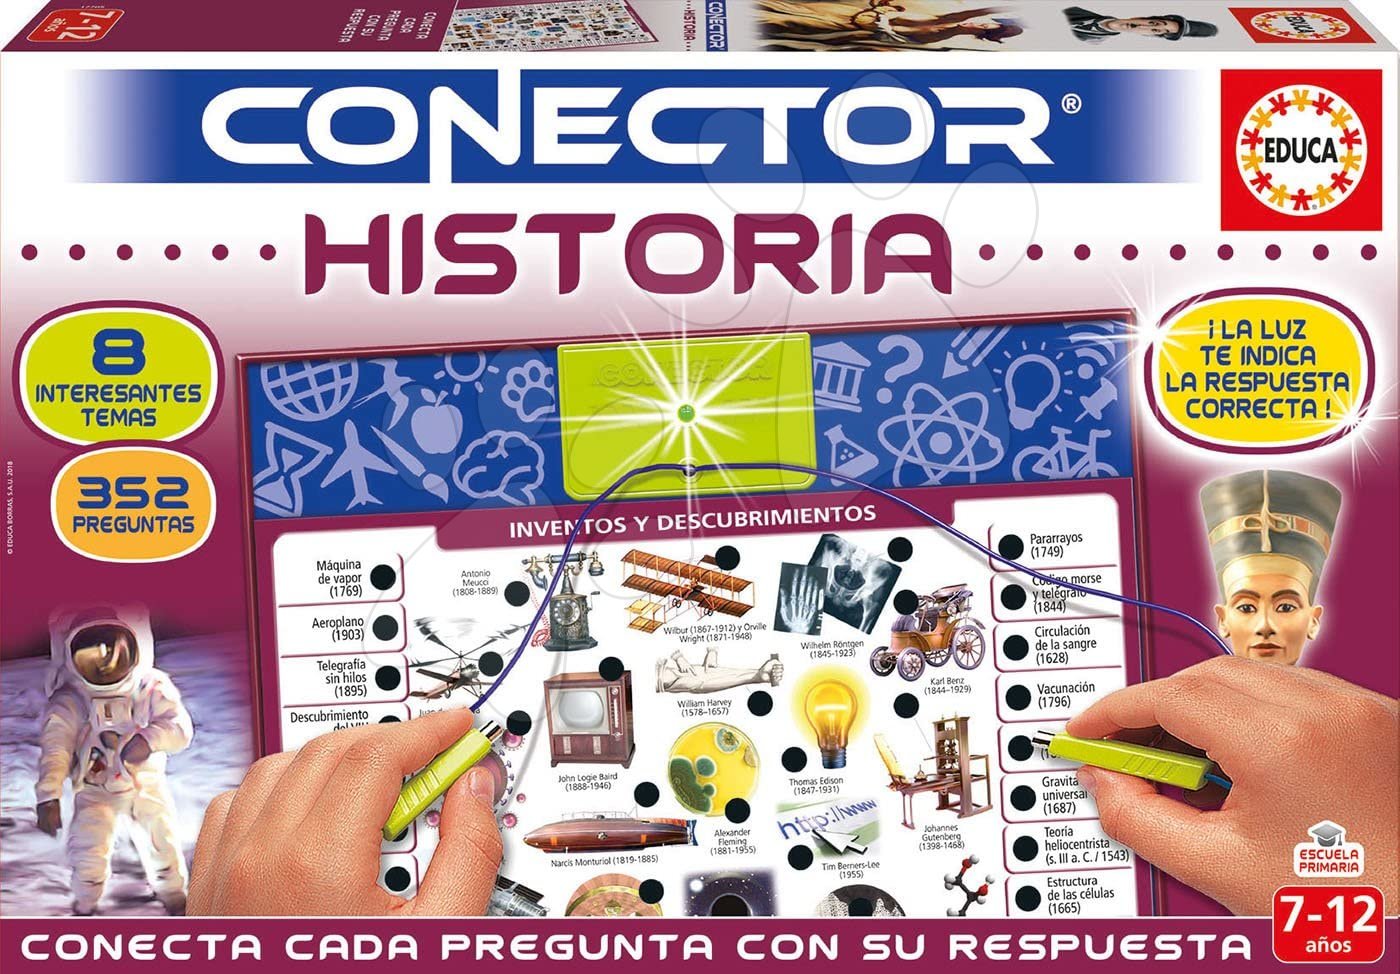 Társasjáték Conector História Educa spanyol nyelvű 352 kérdés 7-12 éves korosztálynak Baba játék webáruház - játék rendelés online